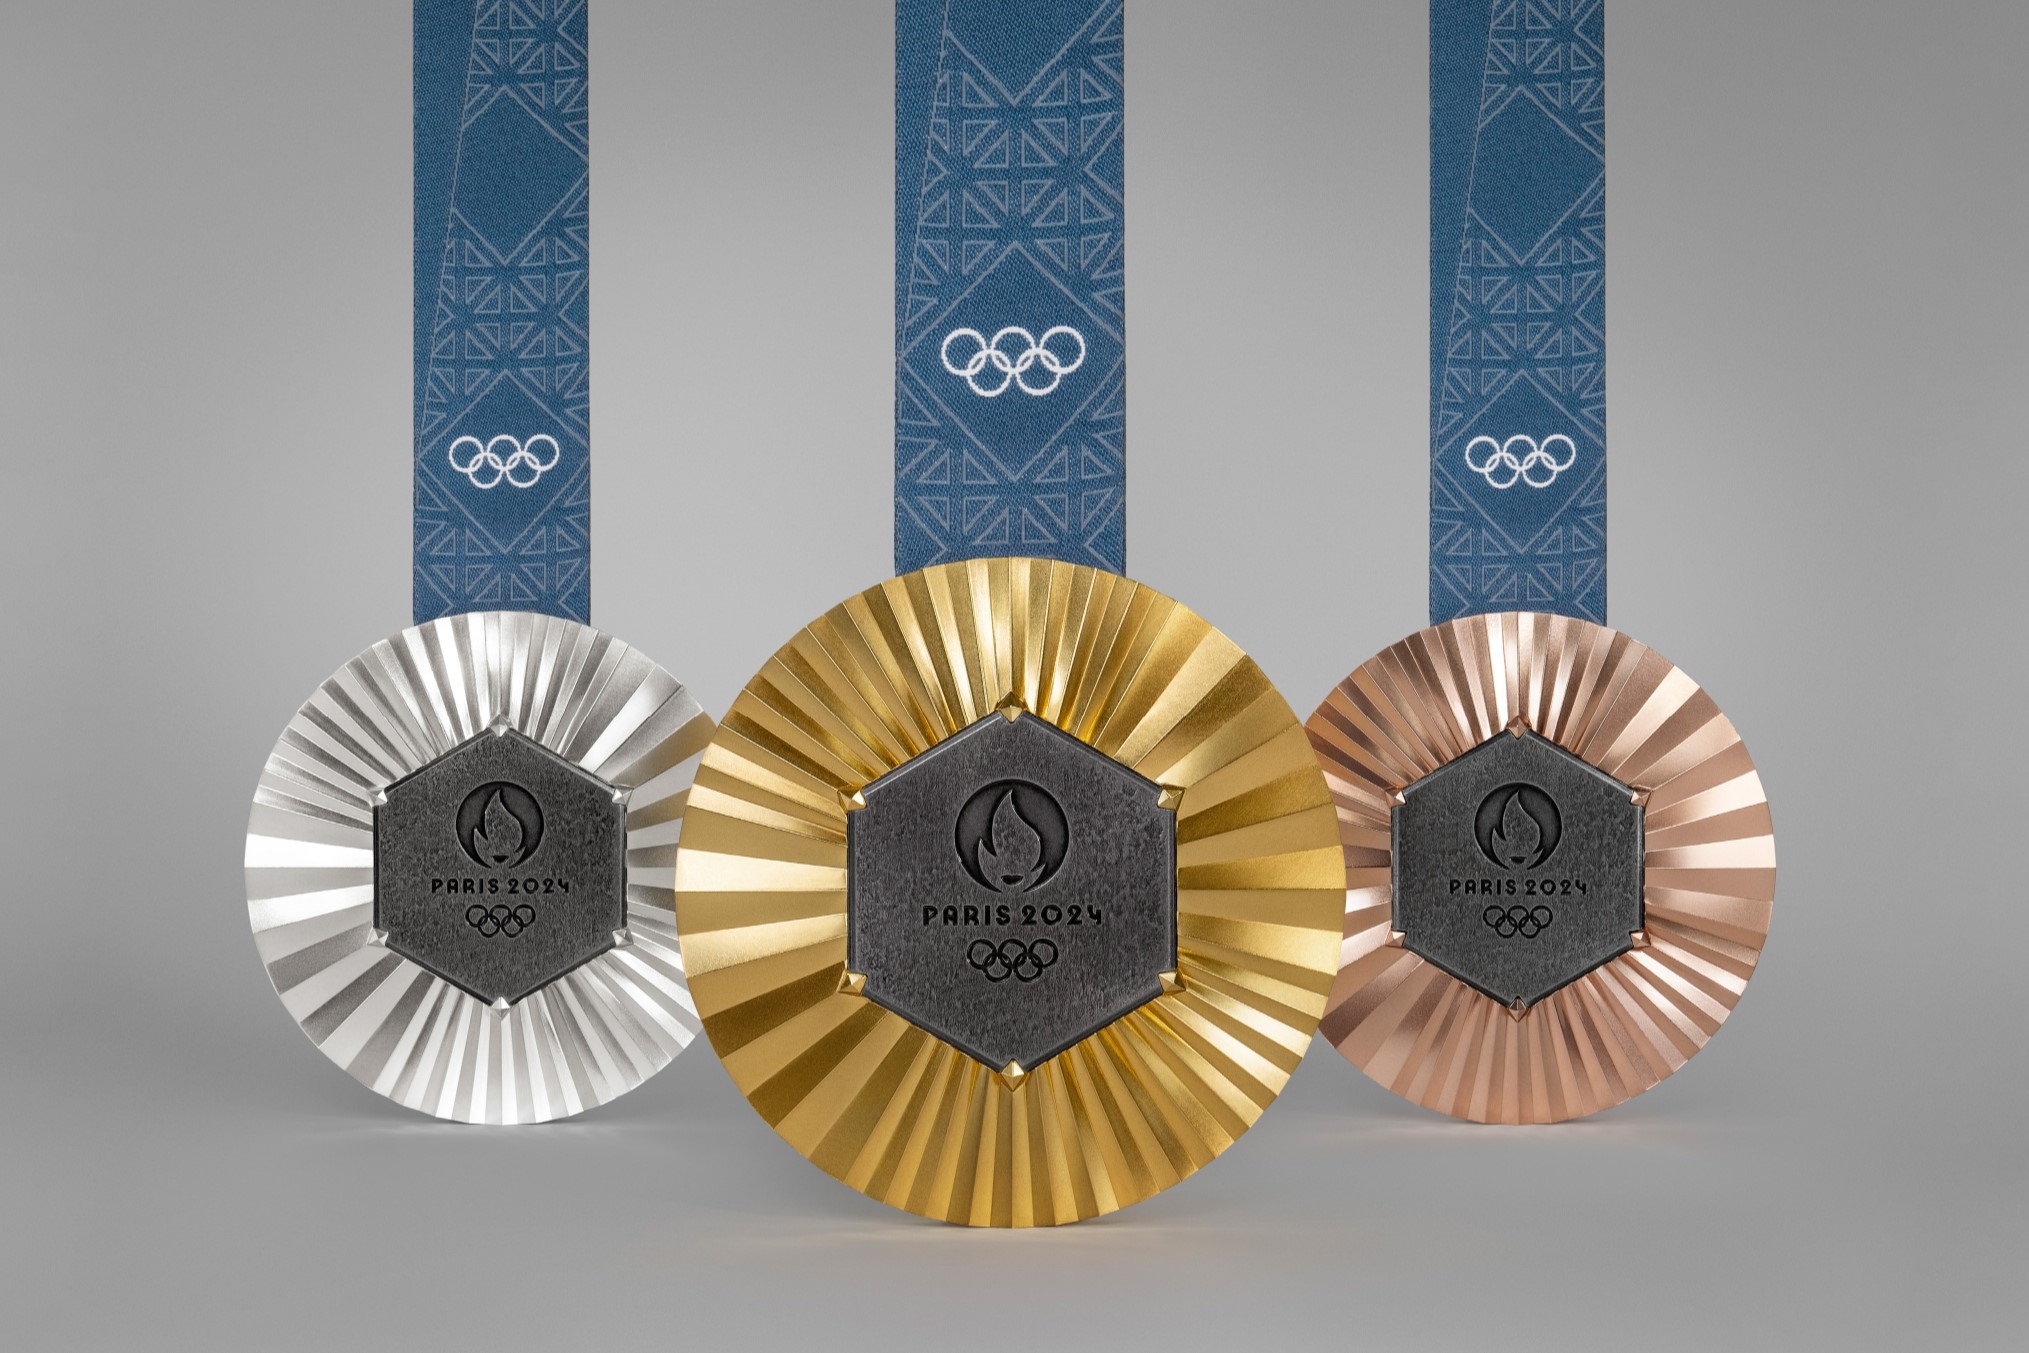 パリ五輪・パラリンピックのメダル発表 エッフェル塔の鉄片使用 高級ブランド「ショーメ」がデザイン